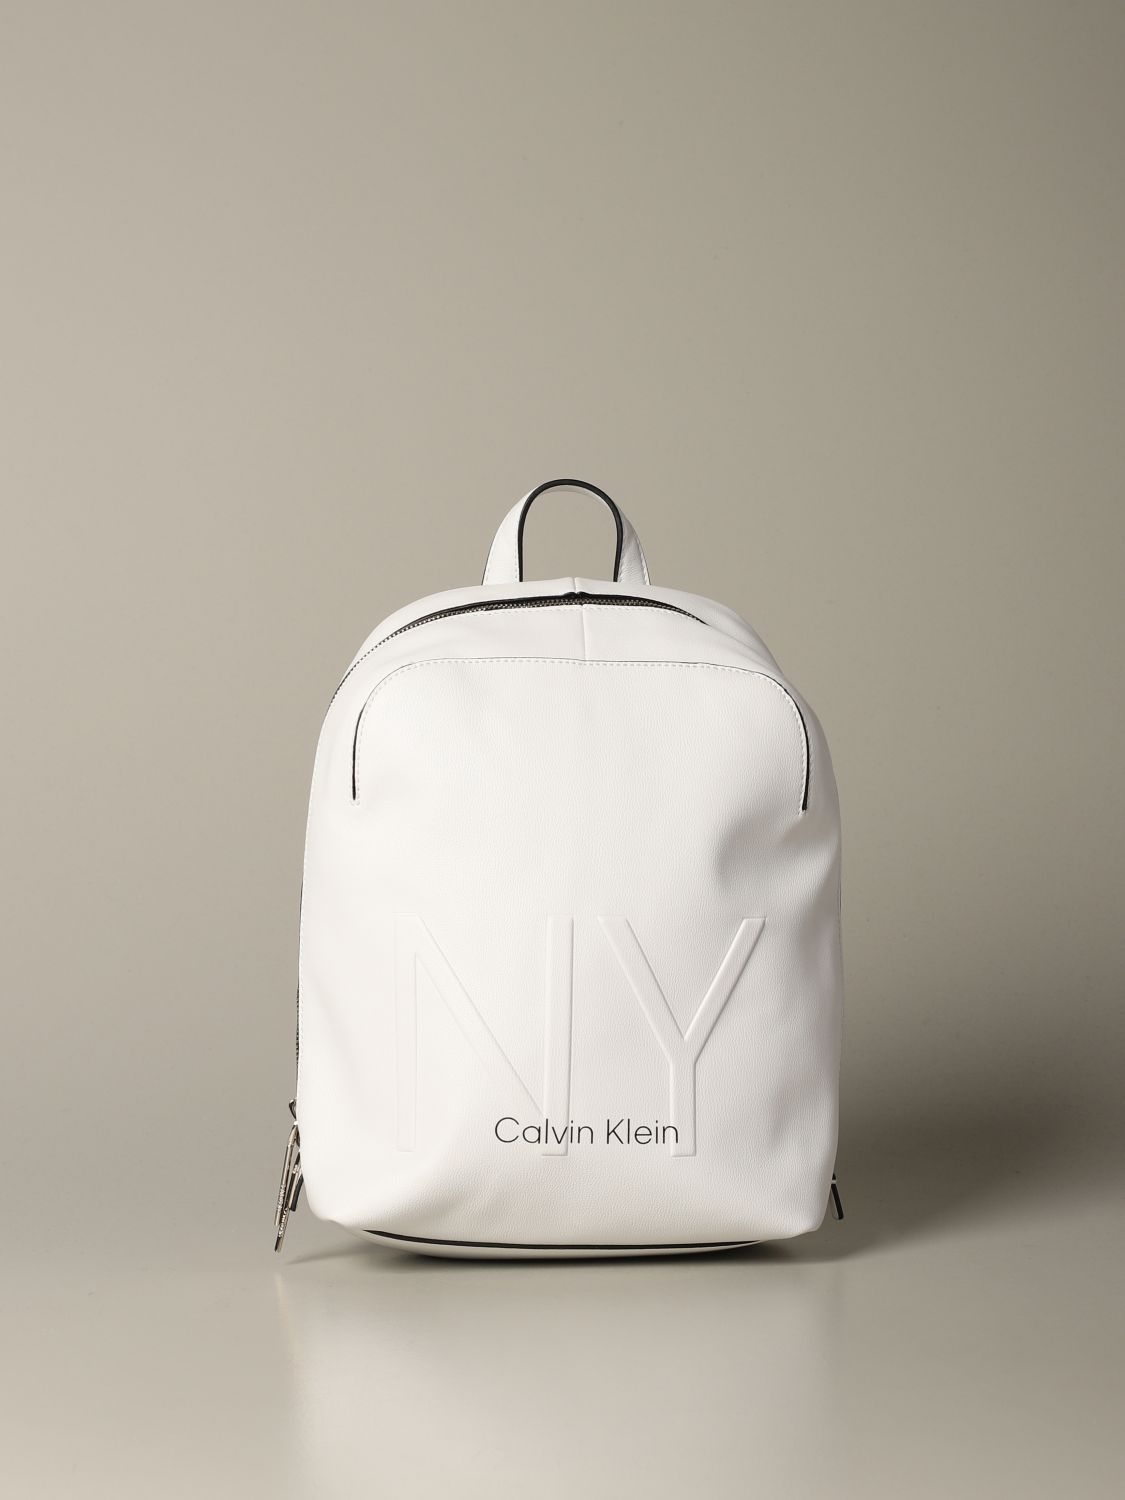 Republiek werkzaamheid Helemaal droog Calvin Klein Outlet: backpack for woman - White | Calvin Klein backpack  K60K606254 online on GIGLIO.COM